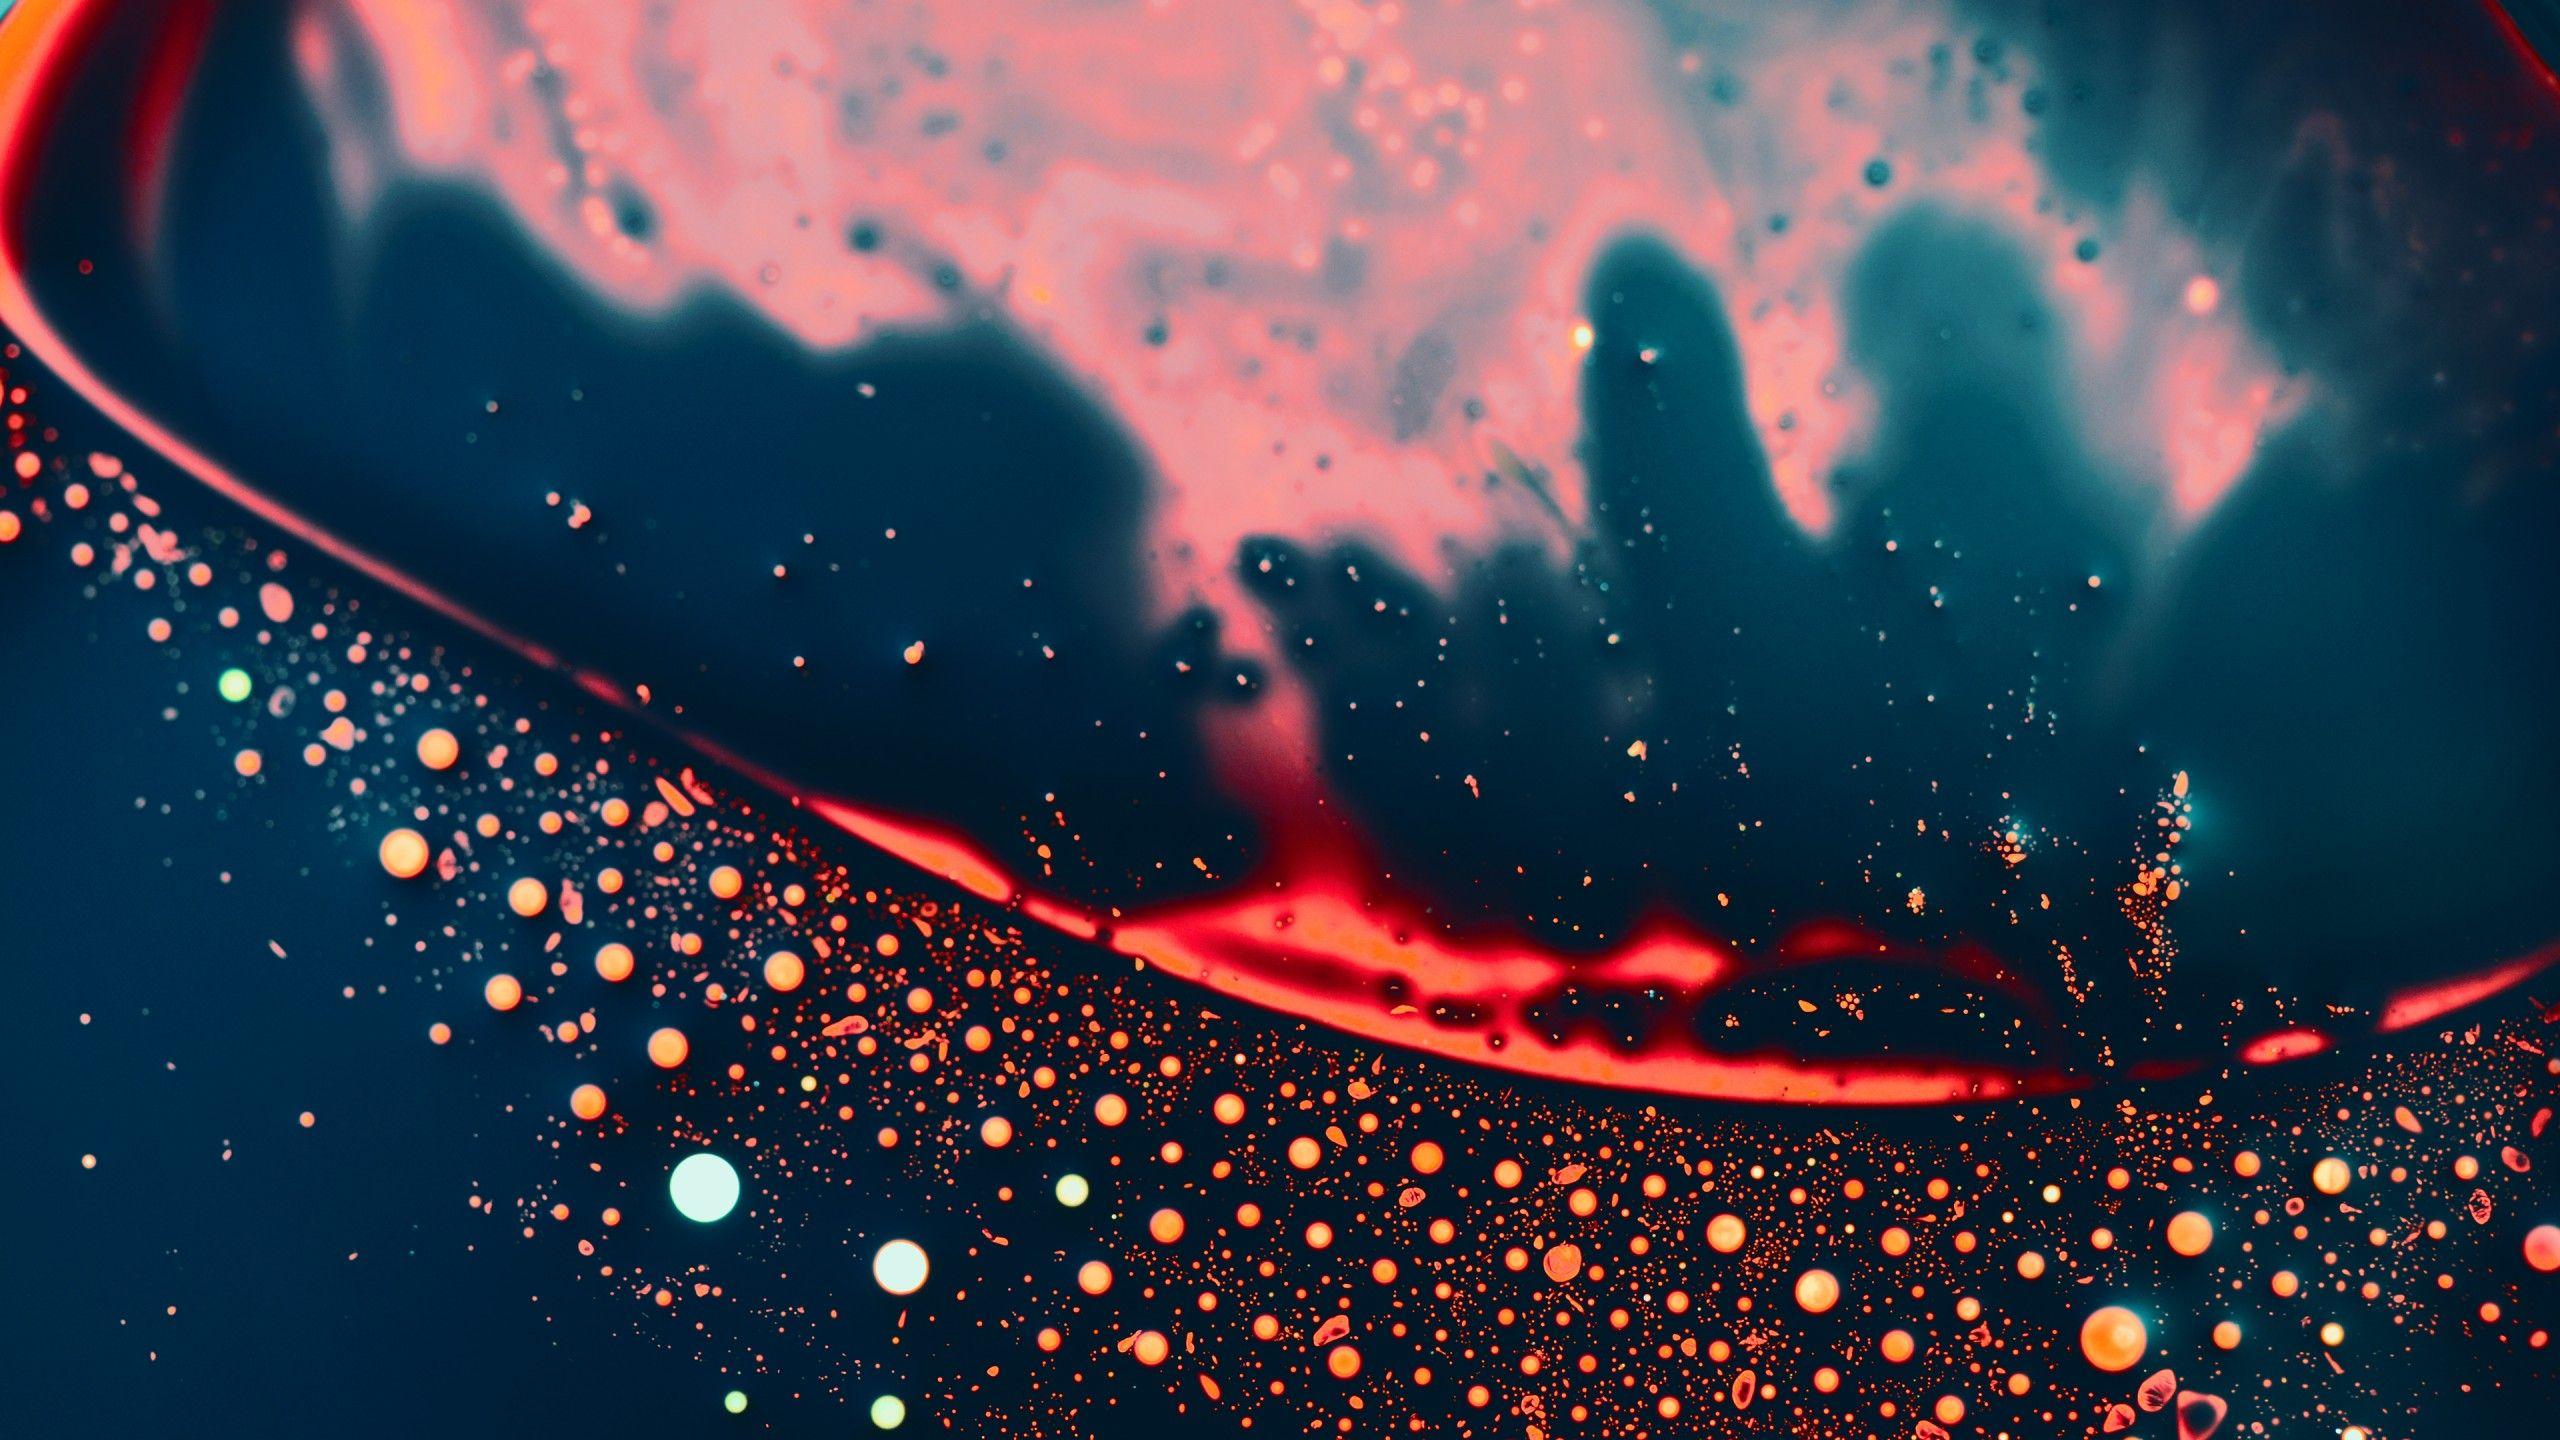 Liquid Desktop Wallpapers Top Free Liquid Desktop Backgrounds